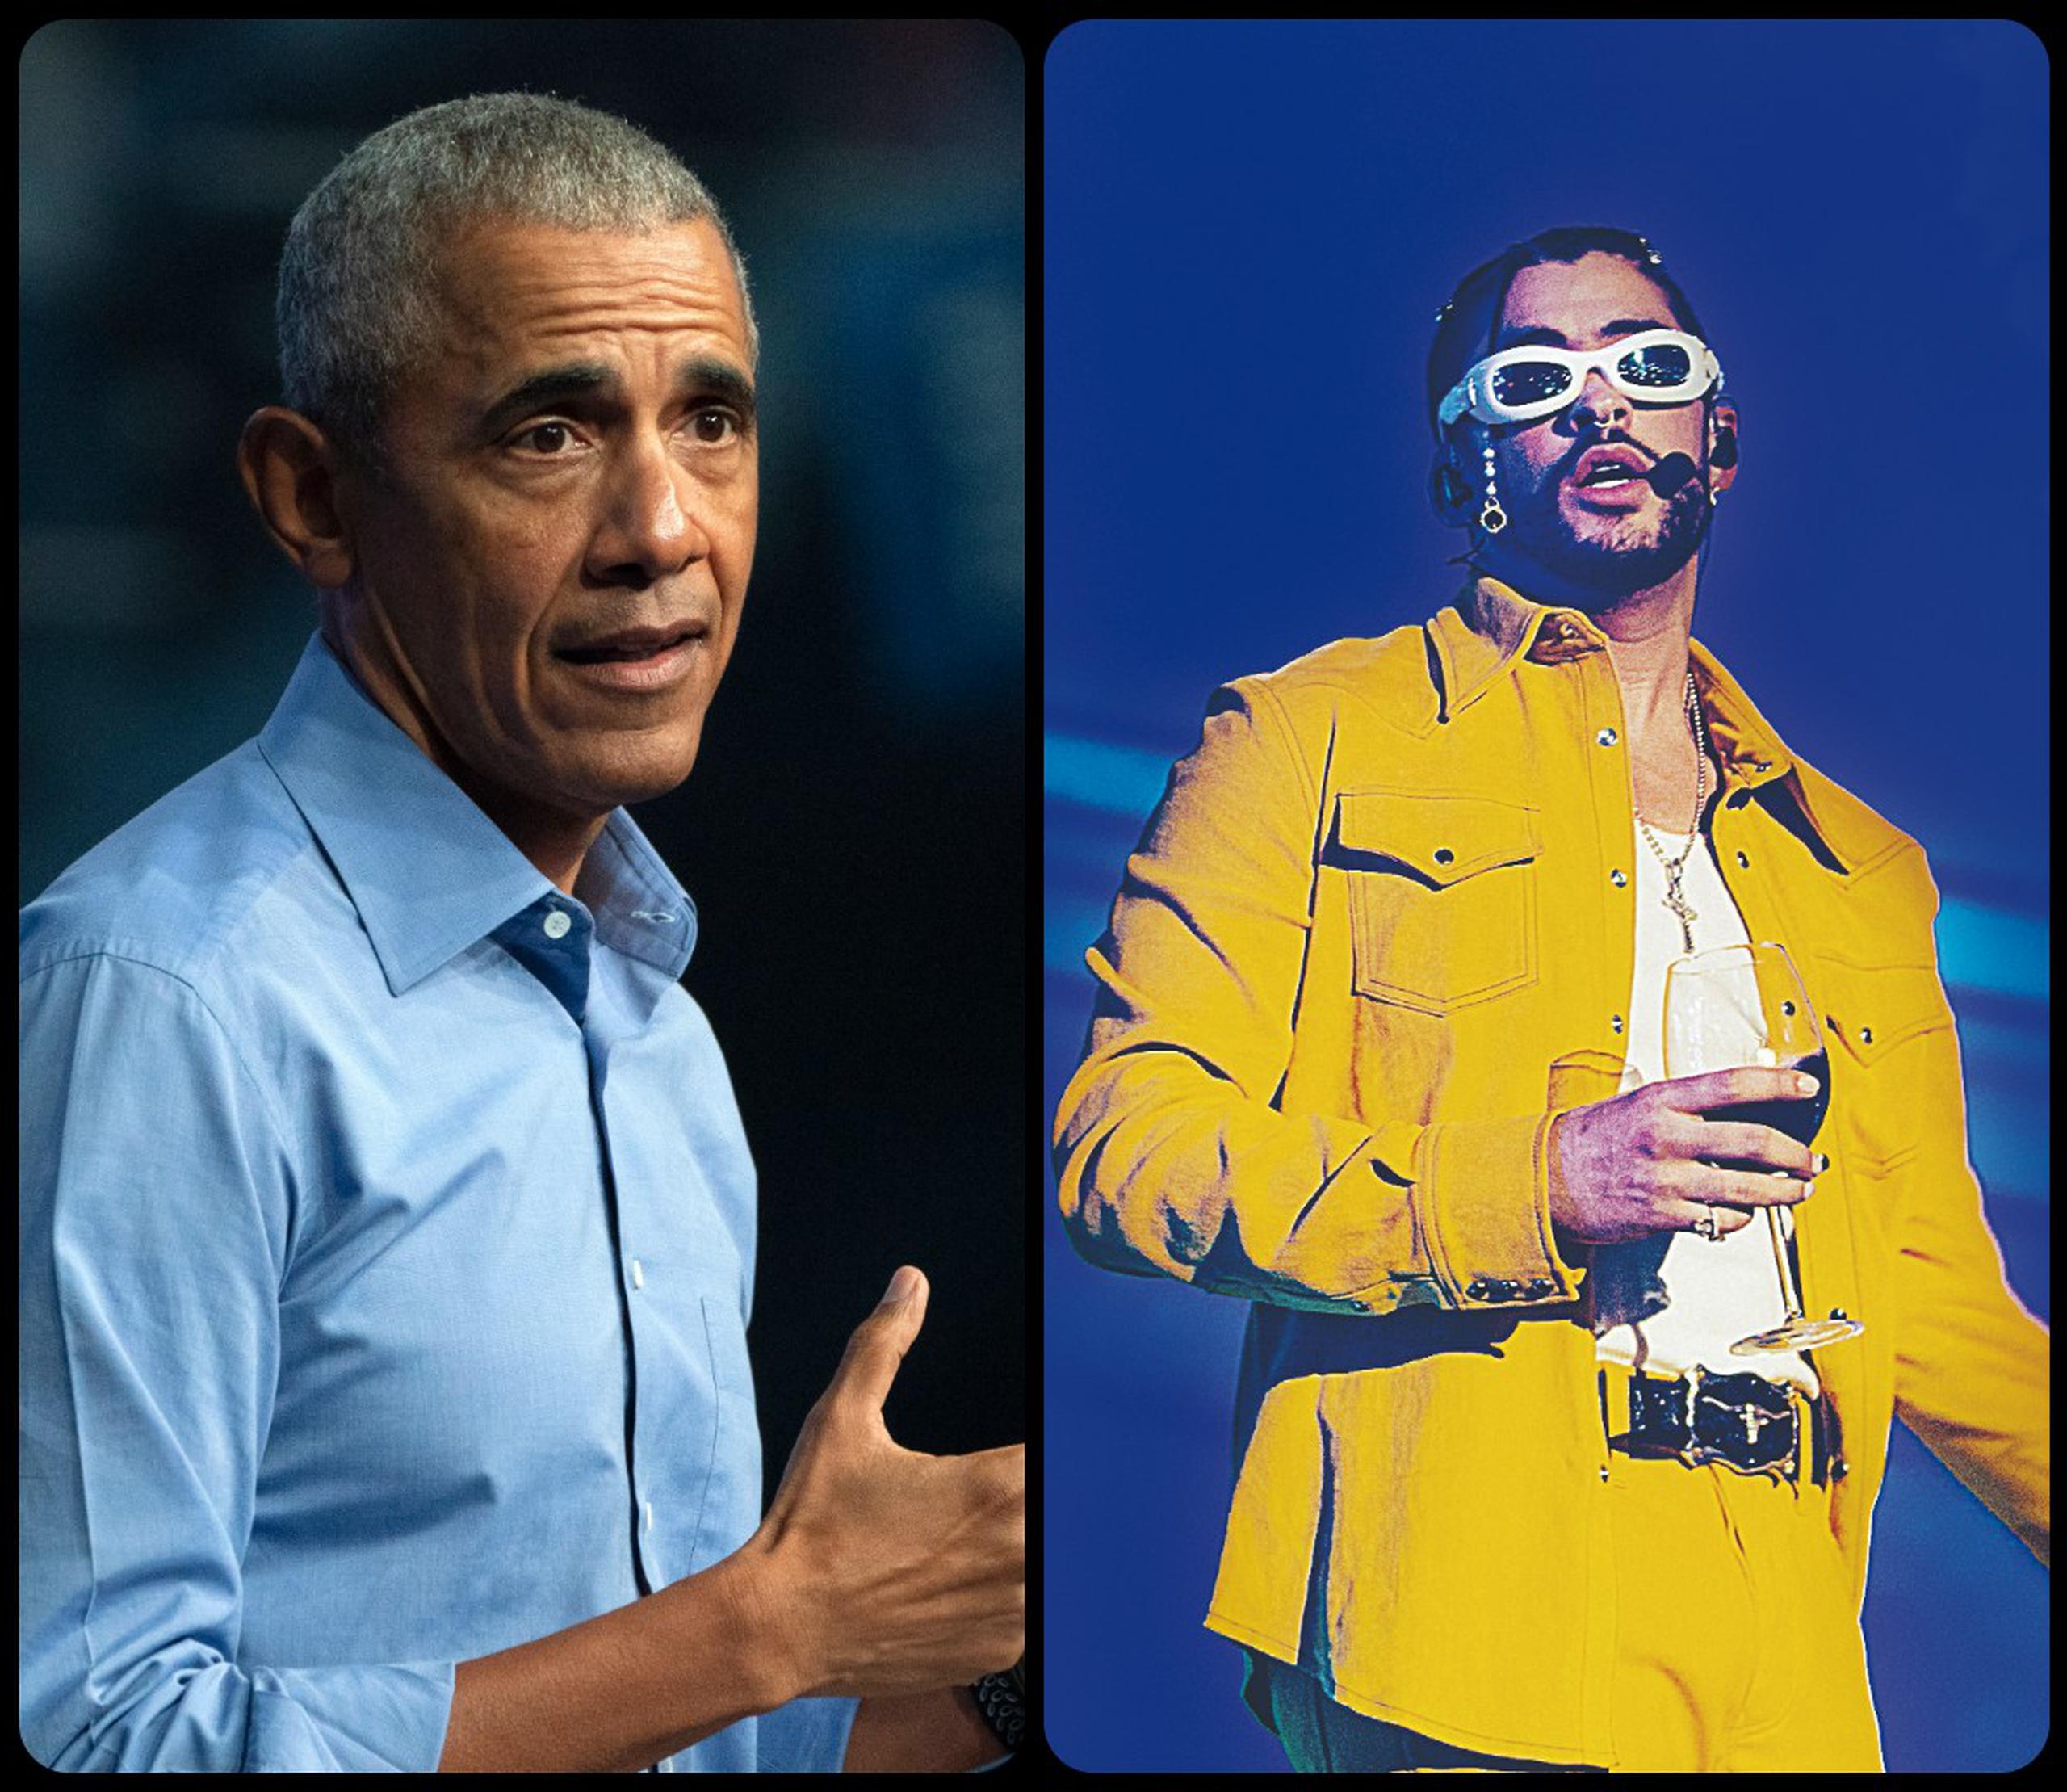 La canción de Bad Bunny ocupa el segundo puesto entre las favoritas de Barack Obama.